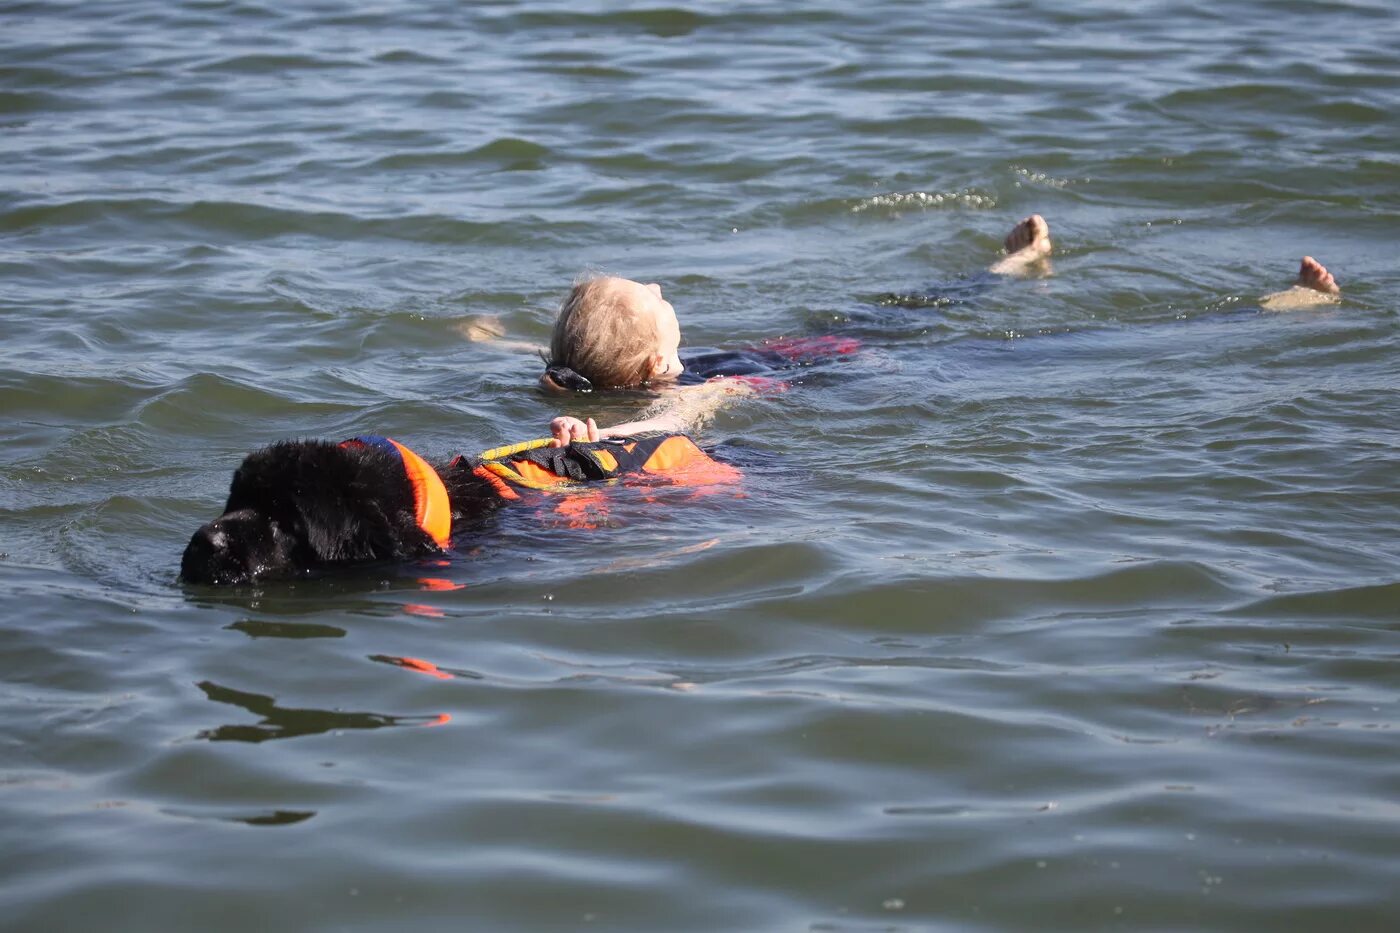 Видео спасения людей. Водолаз ньюфаундленд спасатель. Собака спасатель ньюфаундленд. Ньюфаундленд собака спасает людей. Собака спасатель на воде ньюфаундленд.